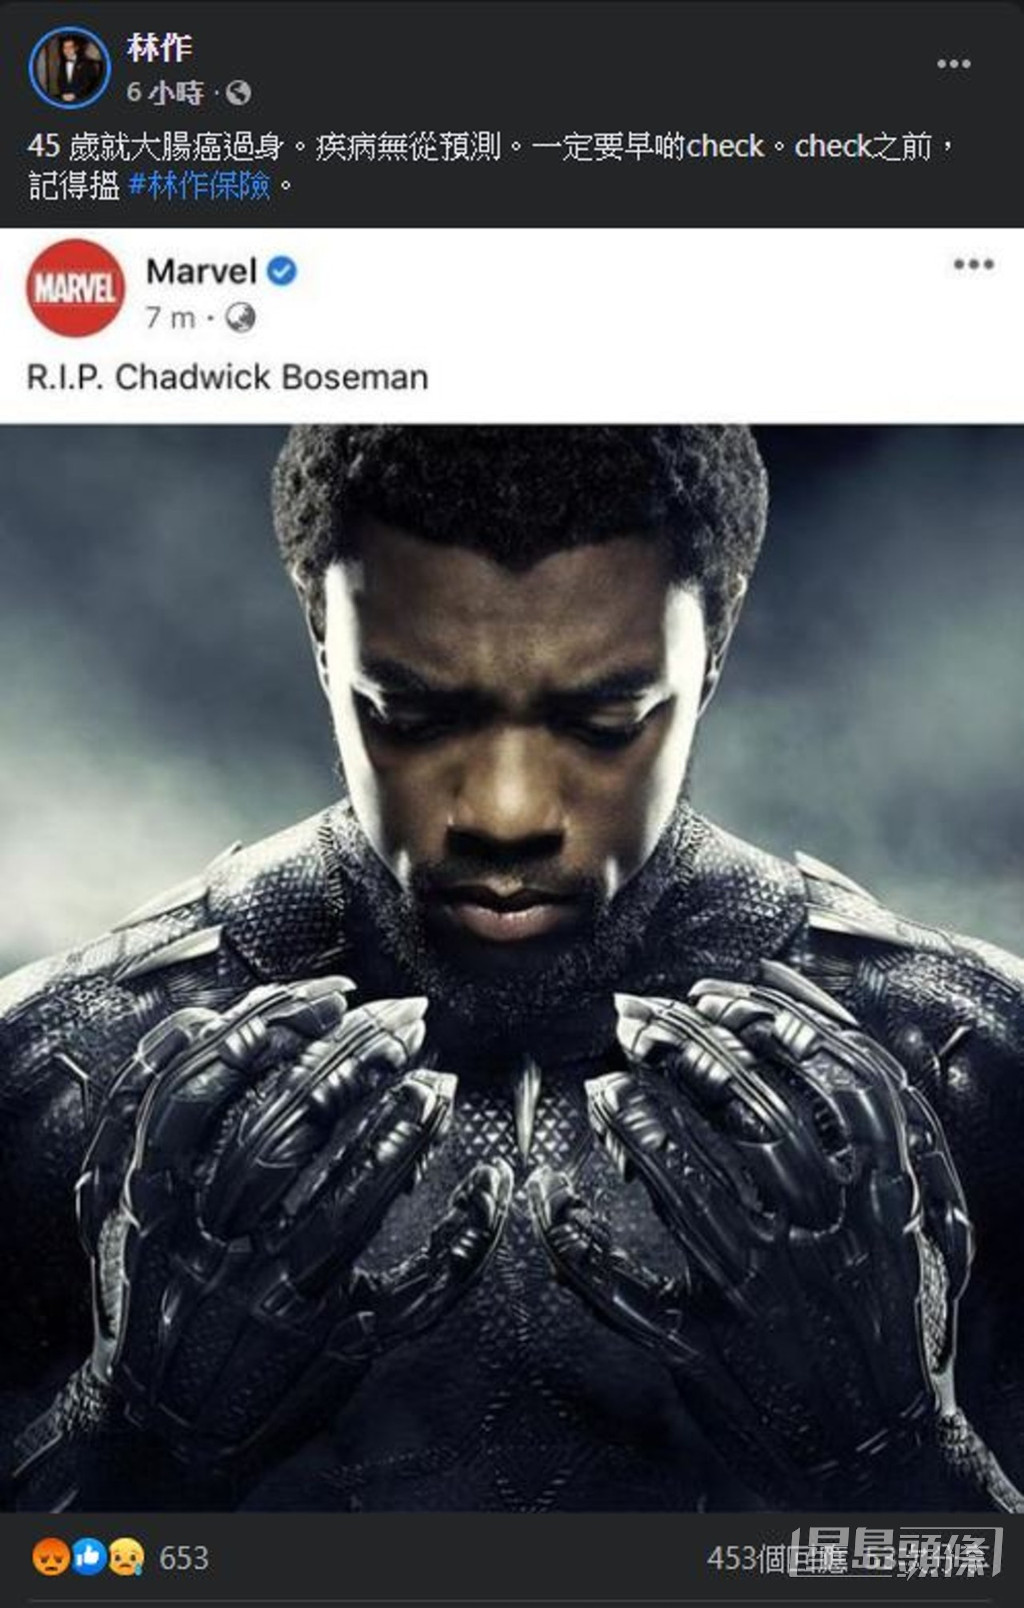 2020年8月28日，Marvel超级英雄片《黑豹Black Panther》男主角查特域克保斯曼不敌癌魔离世，林作一度出Po抽水。